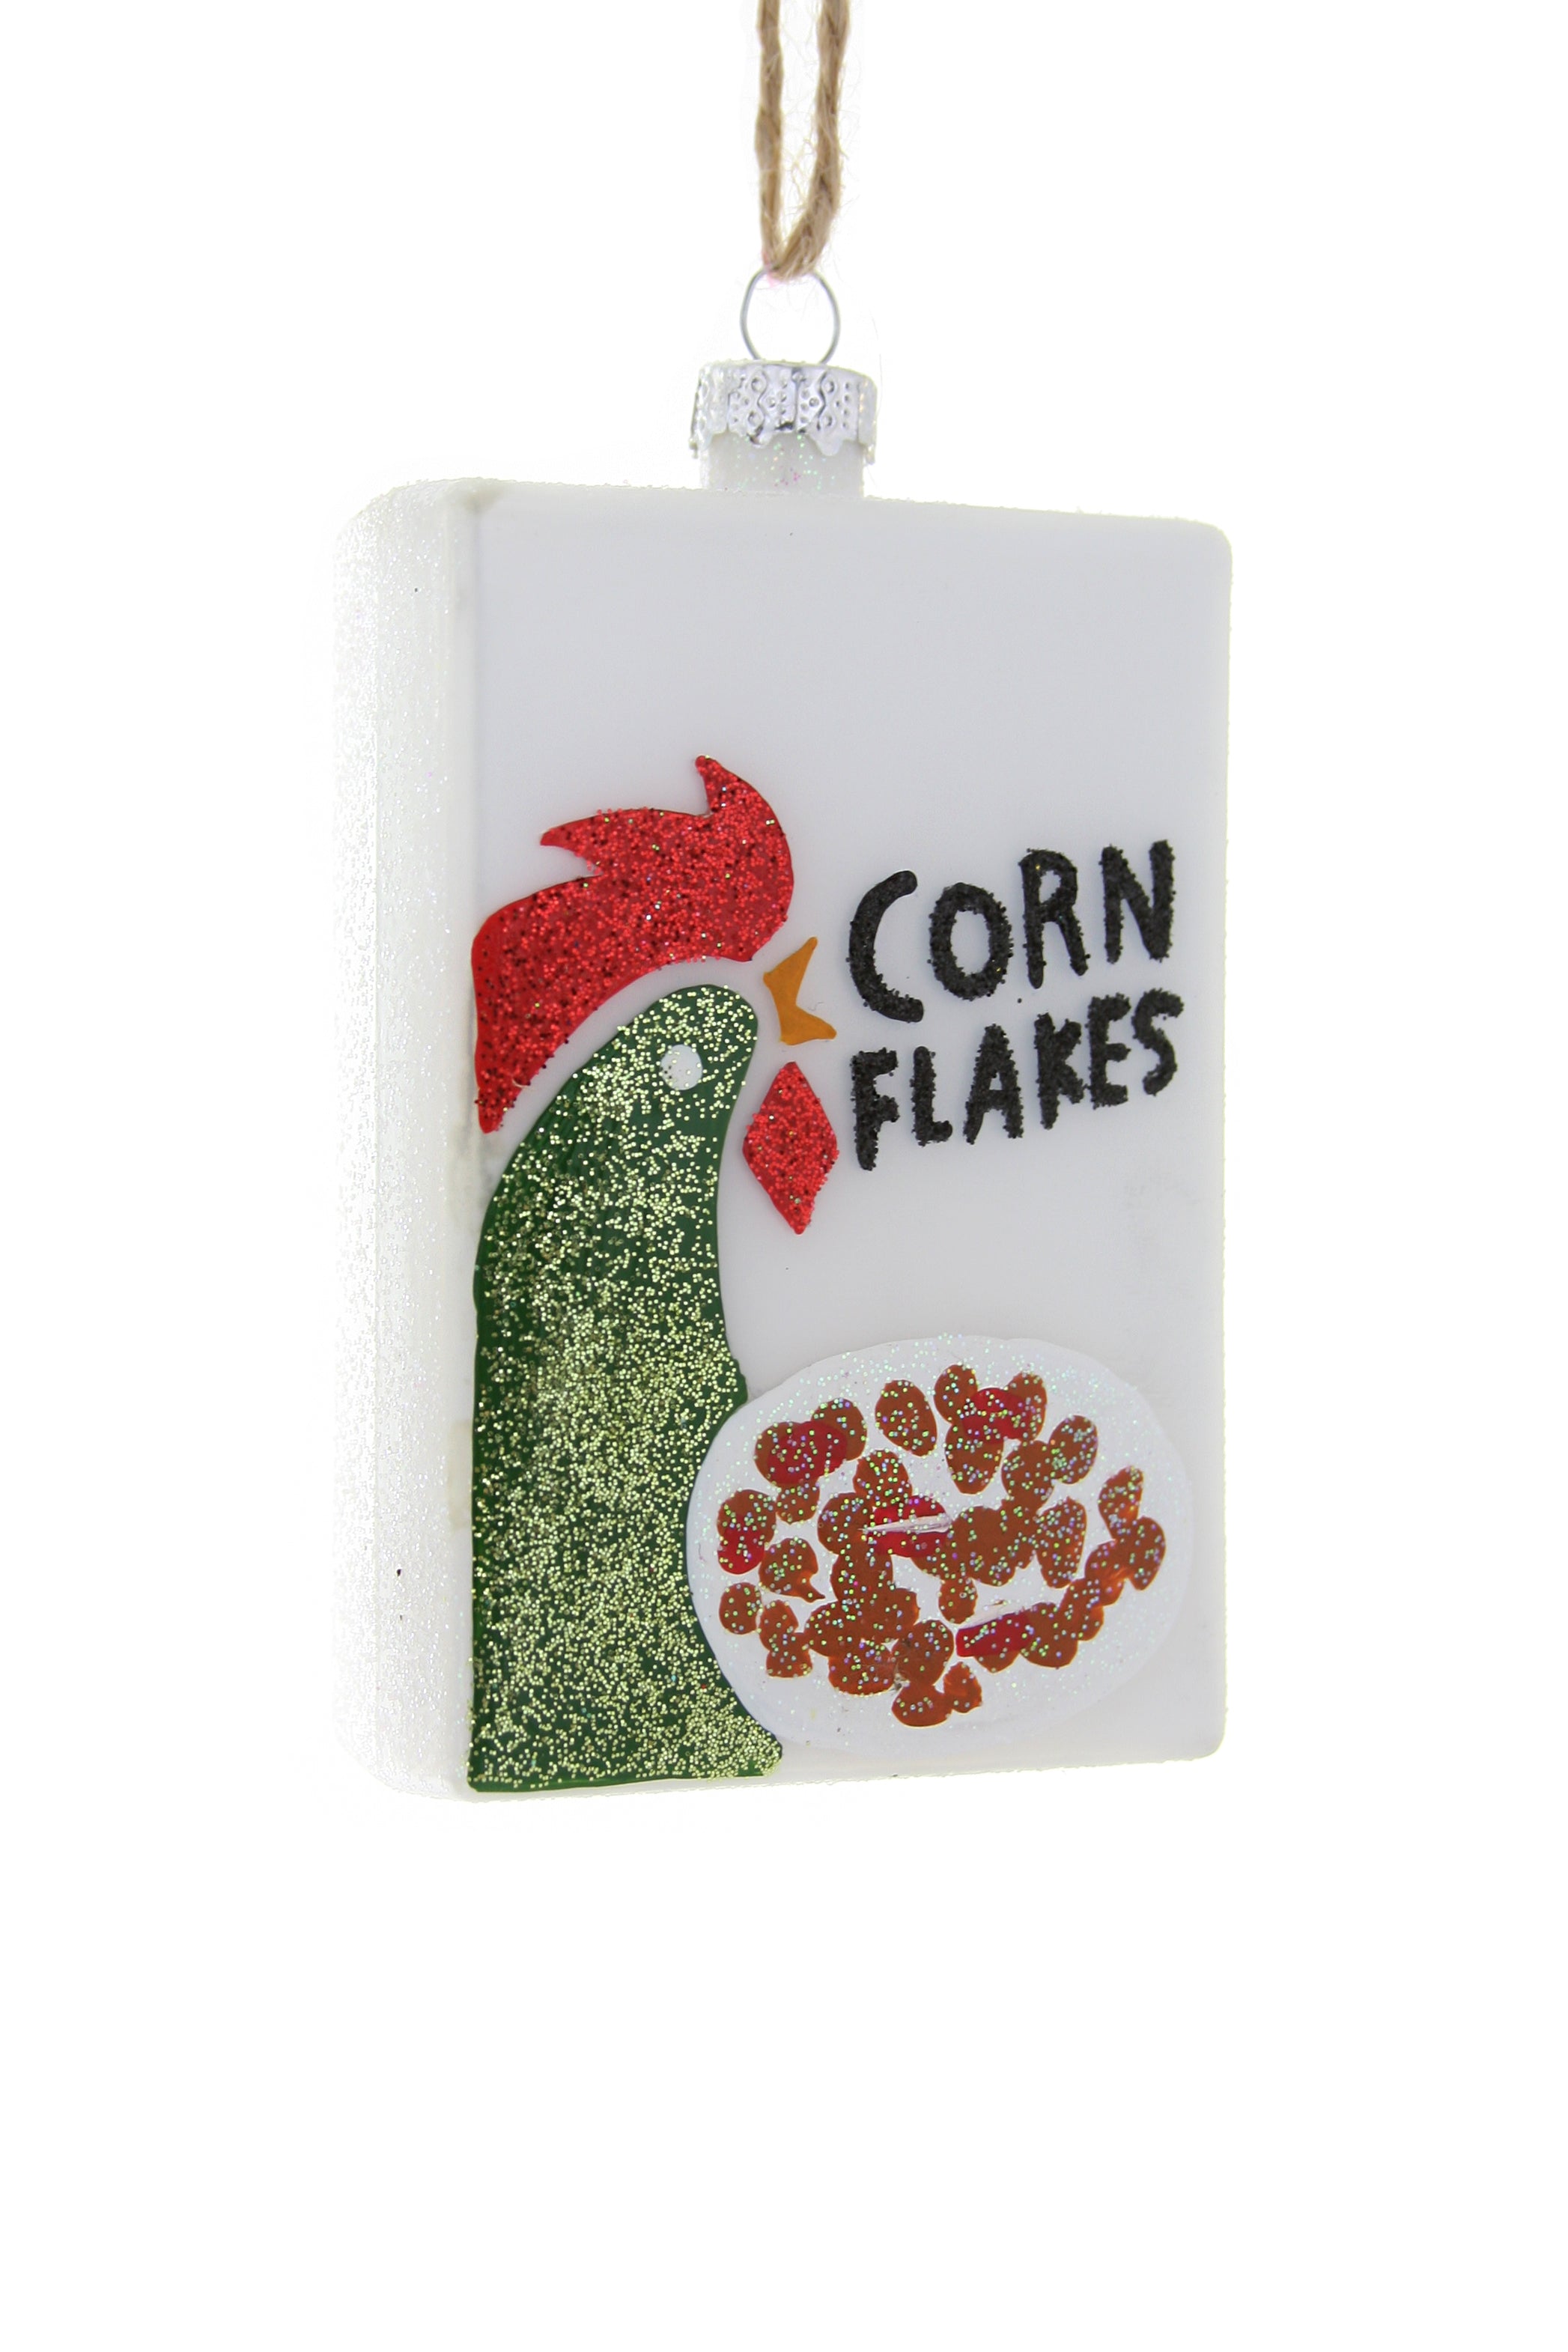 Corn Flakes Box Ornament